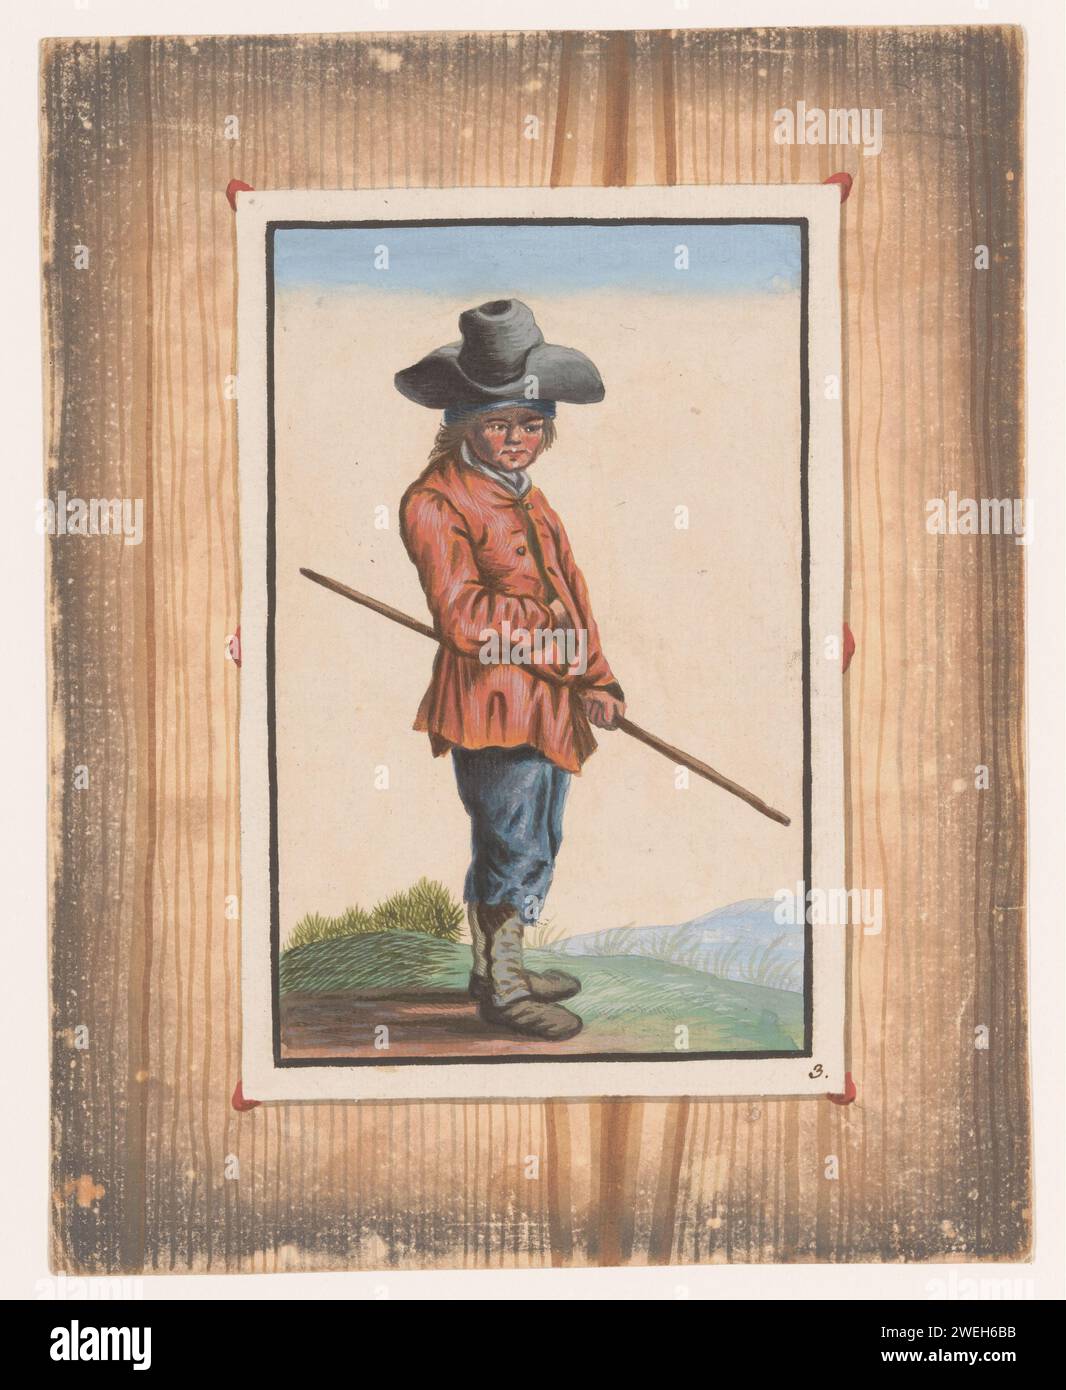 Garçon debout avec un bâton, anonyme, c. 1740 - c. 1760 imprimer trompe l'oeil : comme si la feuille avec le spectacle contre un mur en bois a été attachée. gravure sur papier 'illusion optique' Banque D'Images